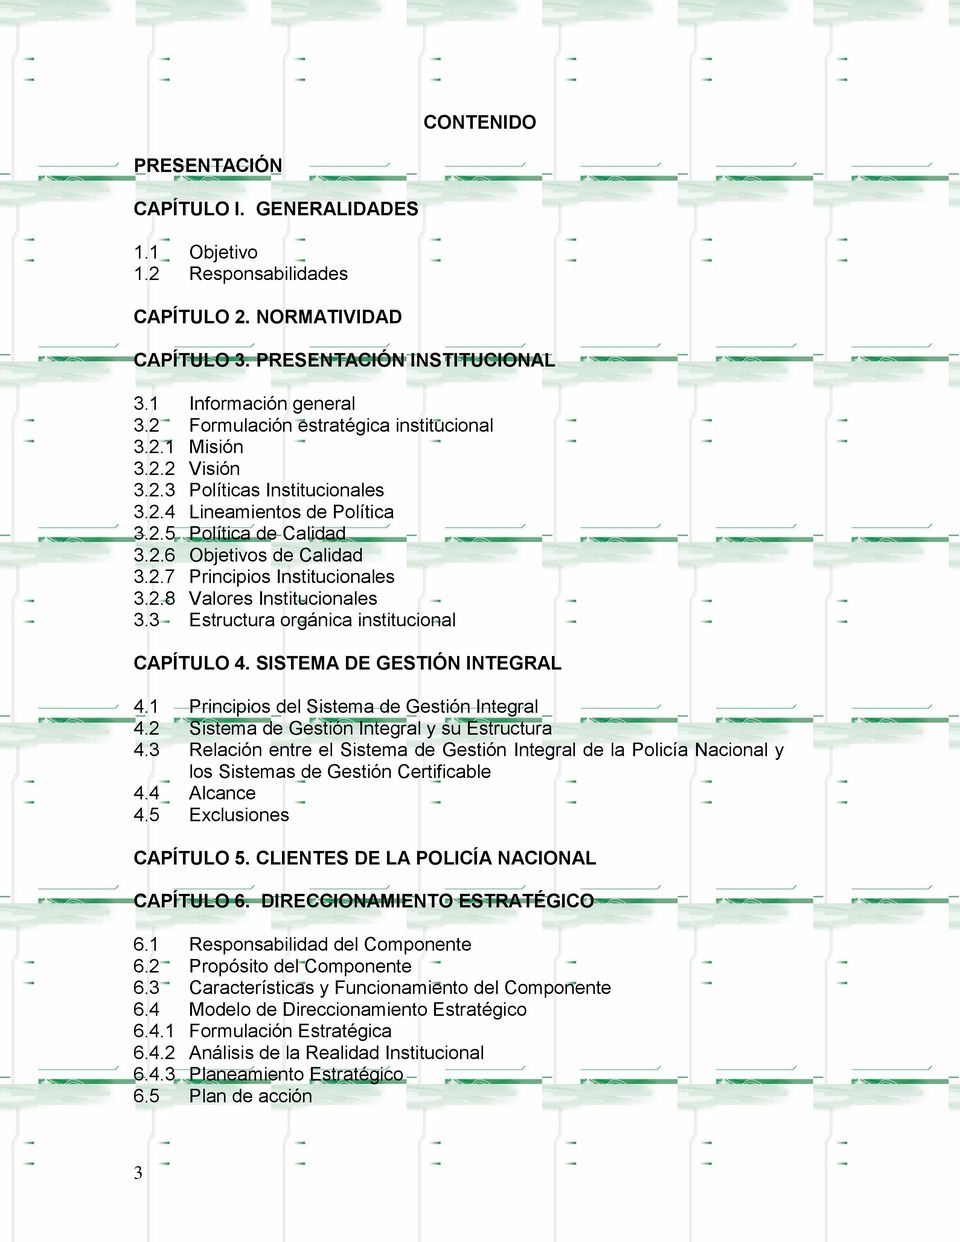 2.8 Valores Institucionales 3.3 Estructura orgánica institucional CAPÍTULO 4. SISTEMA DE GESTIÓN INTEGRAL 4.1 Principios del Sistema de Gestión Integral 4.